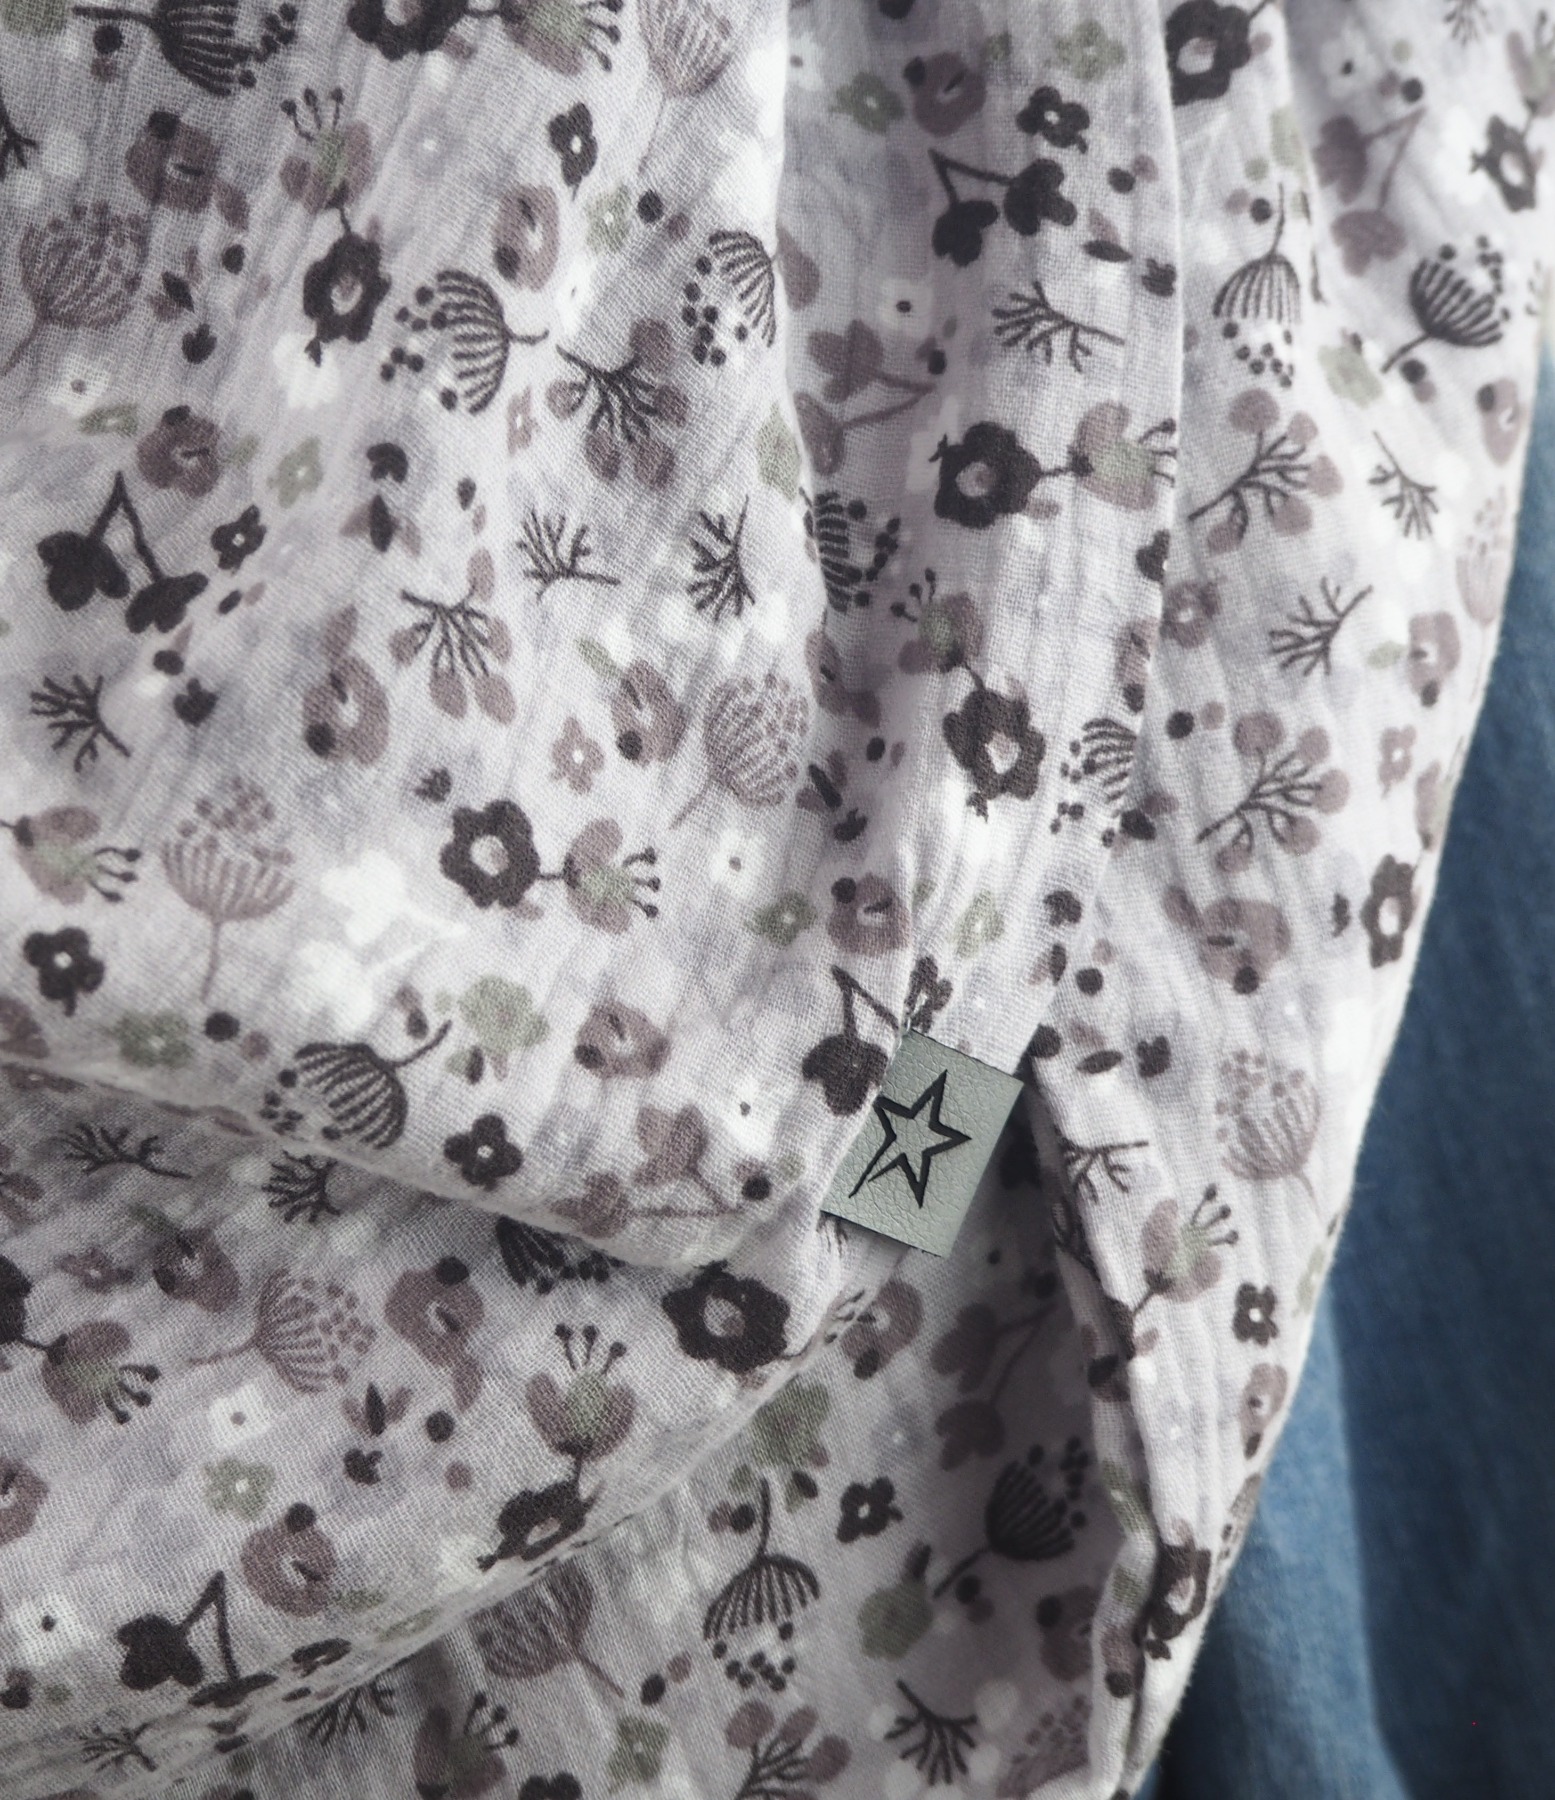 Tuch Dreieckstuch Musselin Damen Schal grau mit kleinen Streublümchen XXL Tuch aus Baumwolle Mamatuch 3